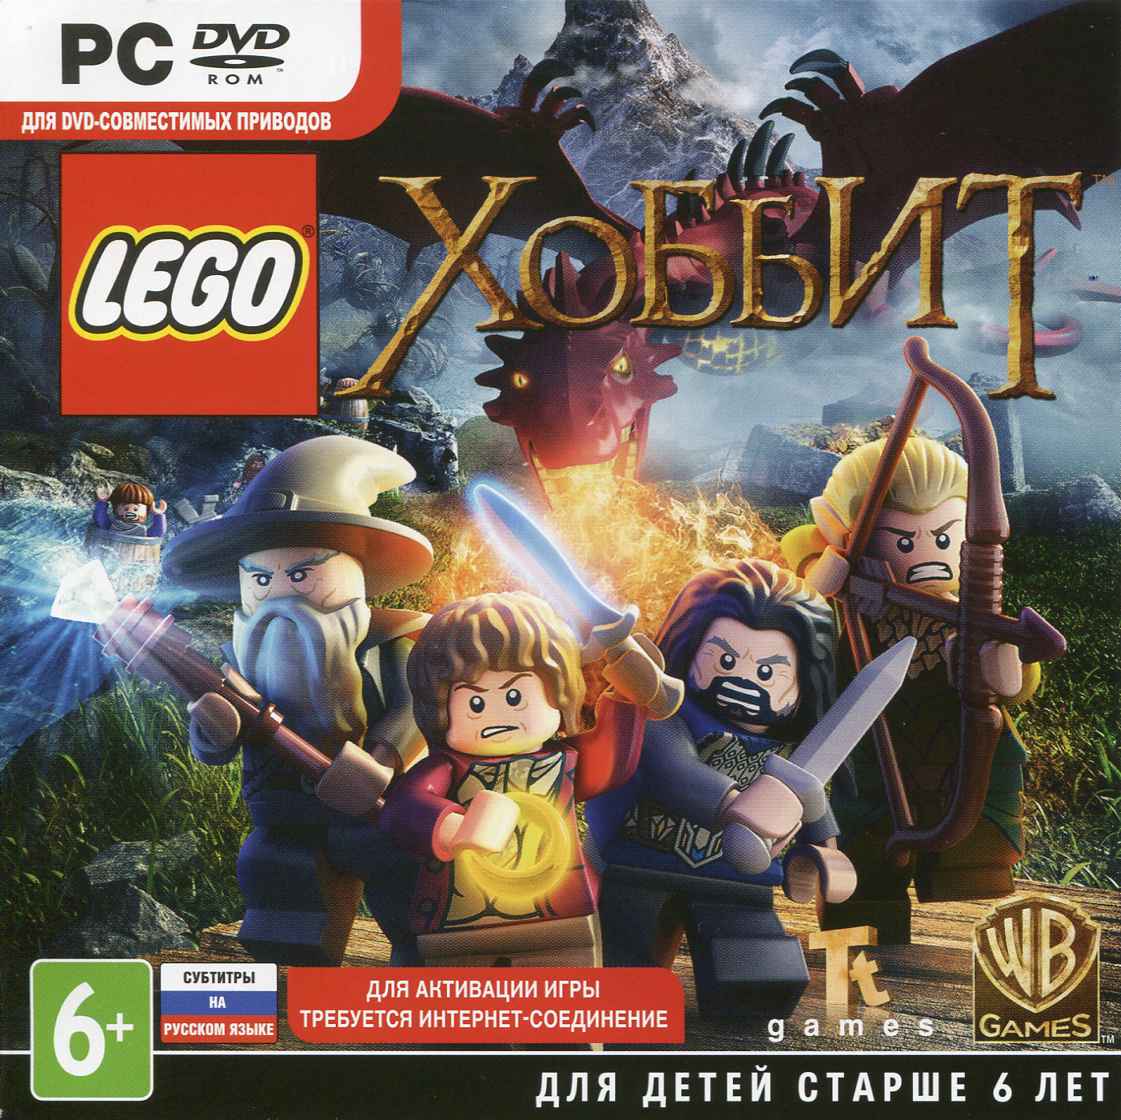 LEGO Хоббит [Hobbit] (Ключ активации в Steam)